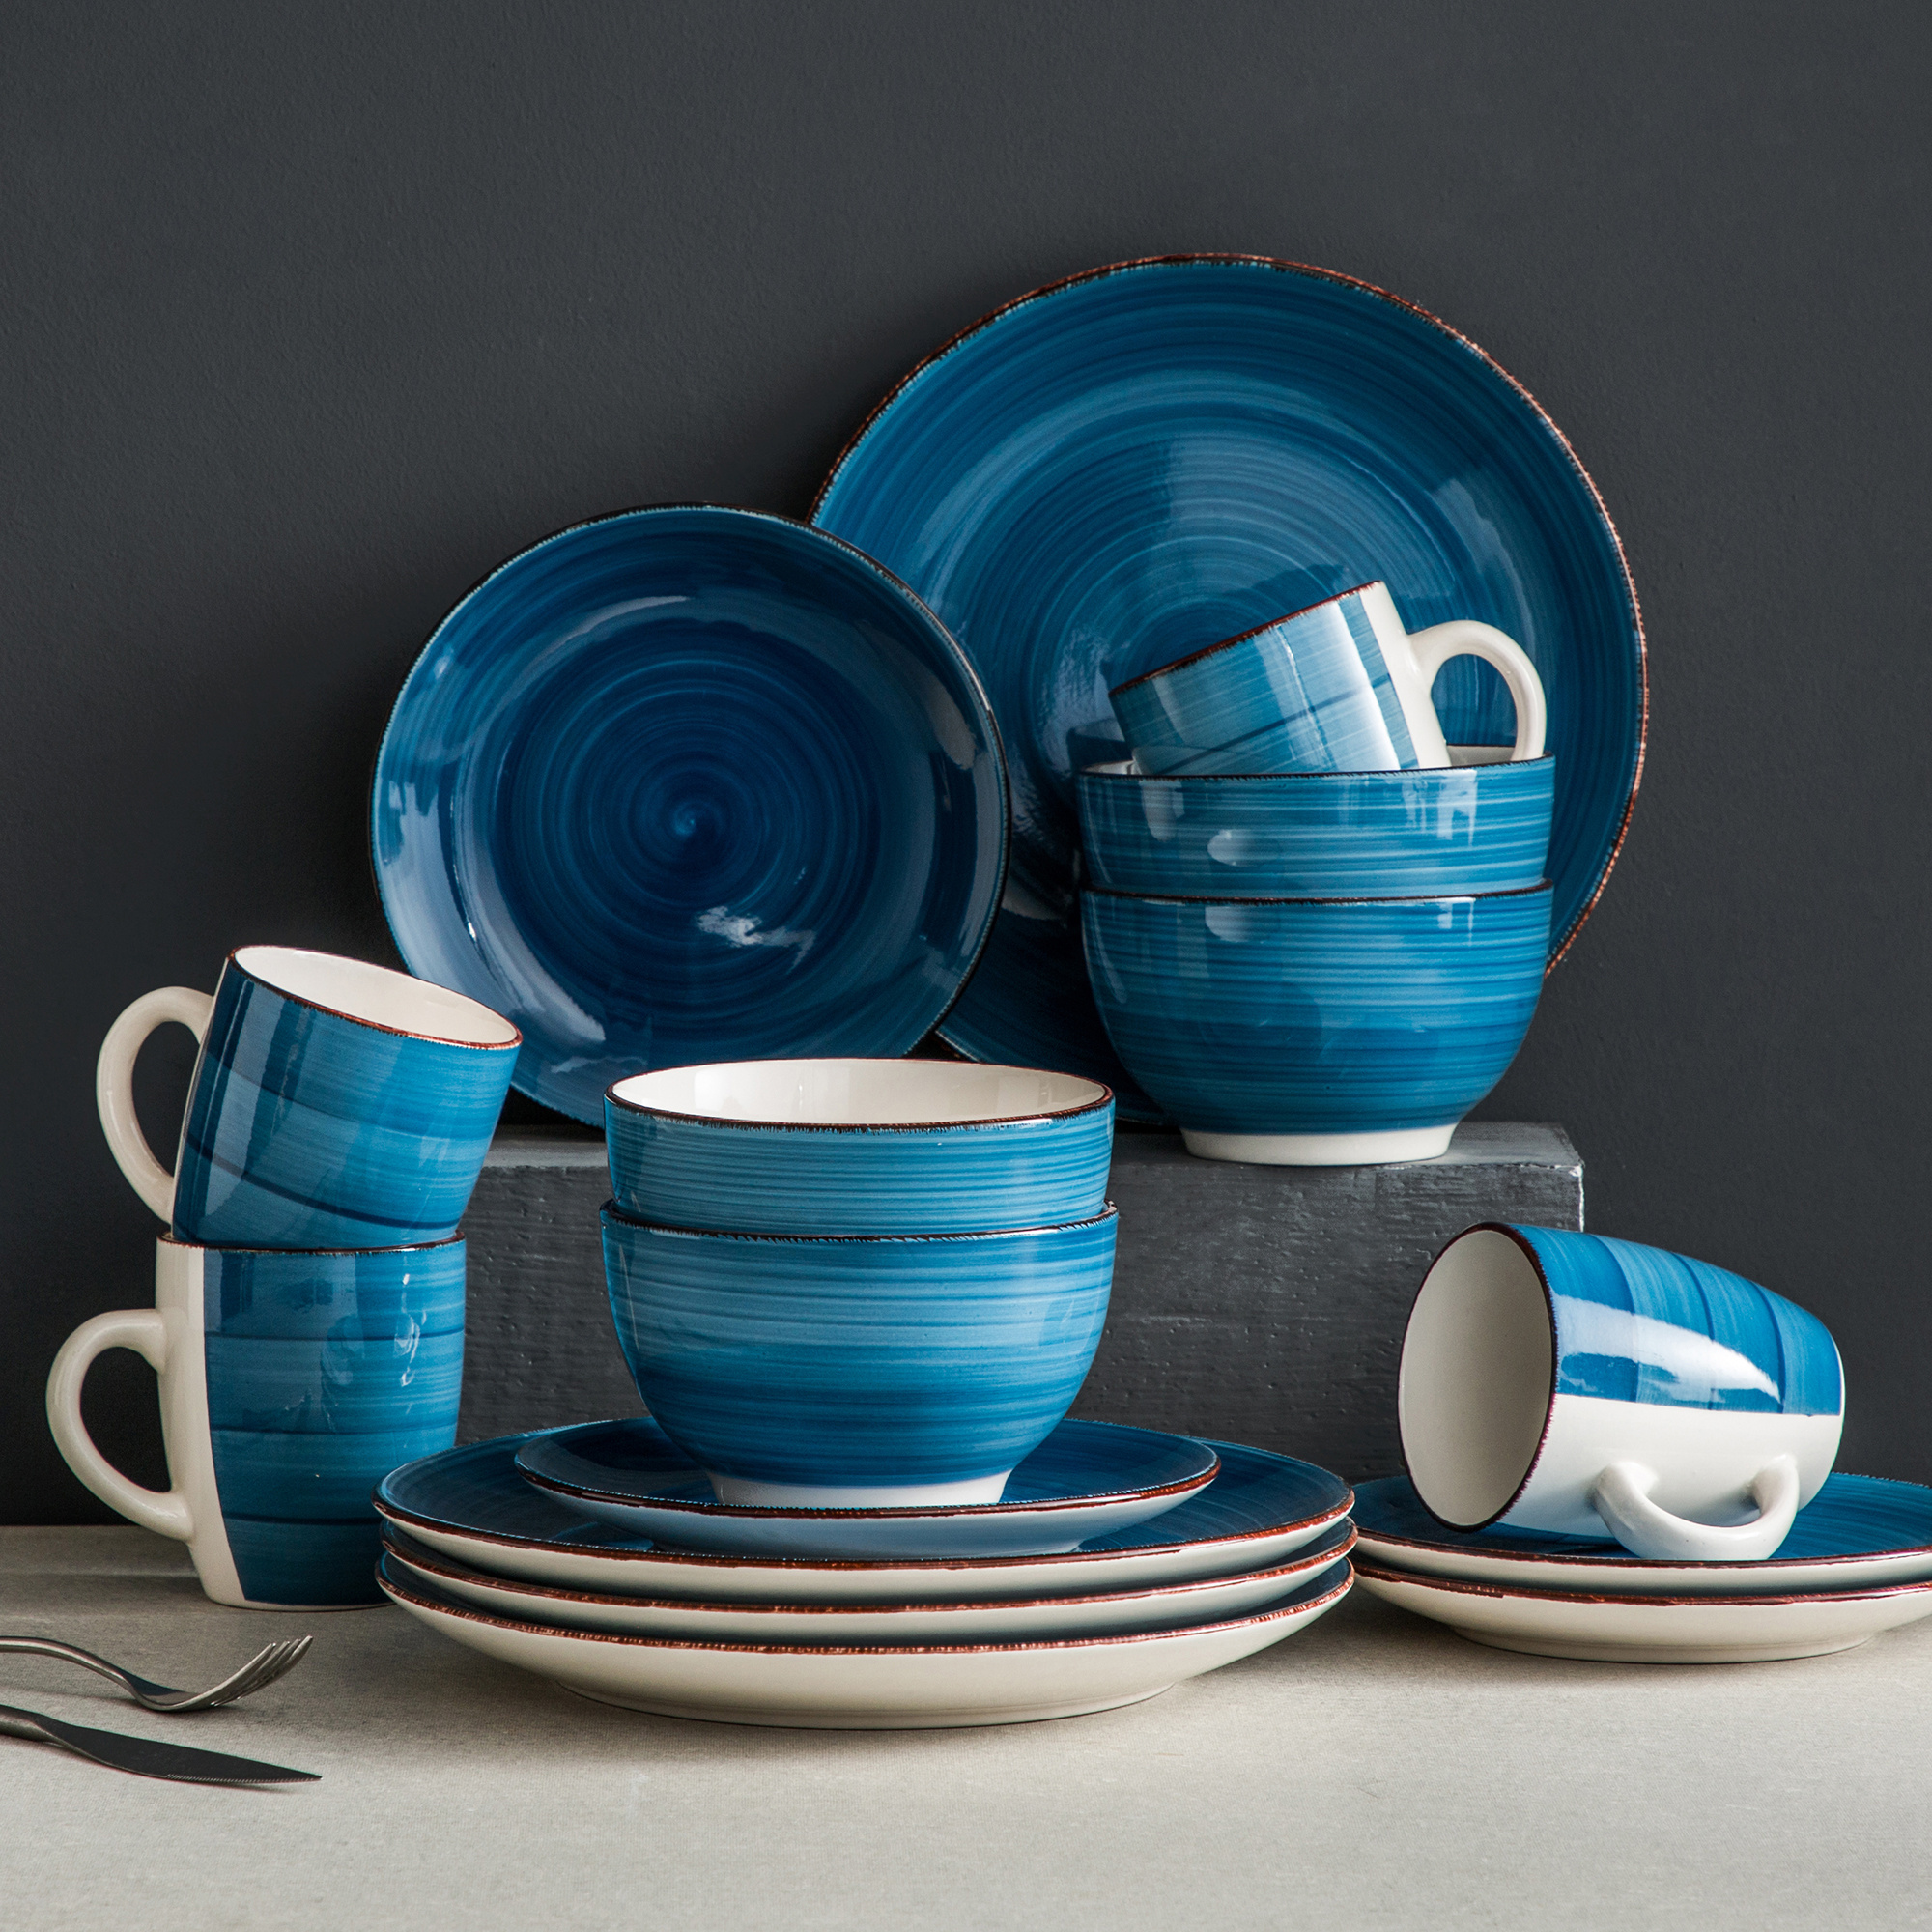 

16-pieces Blue Porcelain Dinner Set Vintage Ceramic Tableware Set With Dinner Plate, Dessert Plate, Bowl, Mug For 4 People